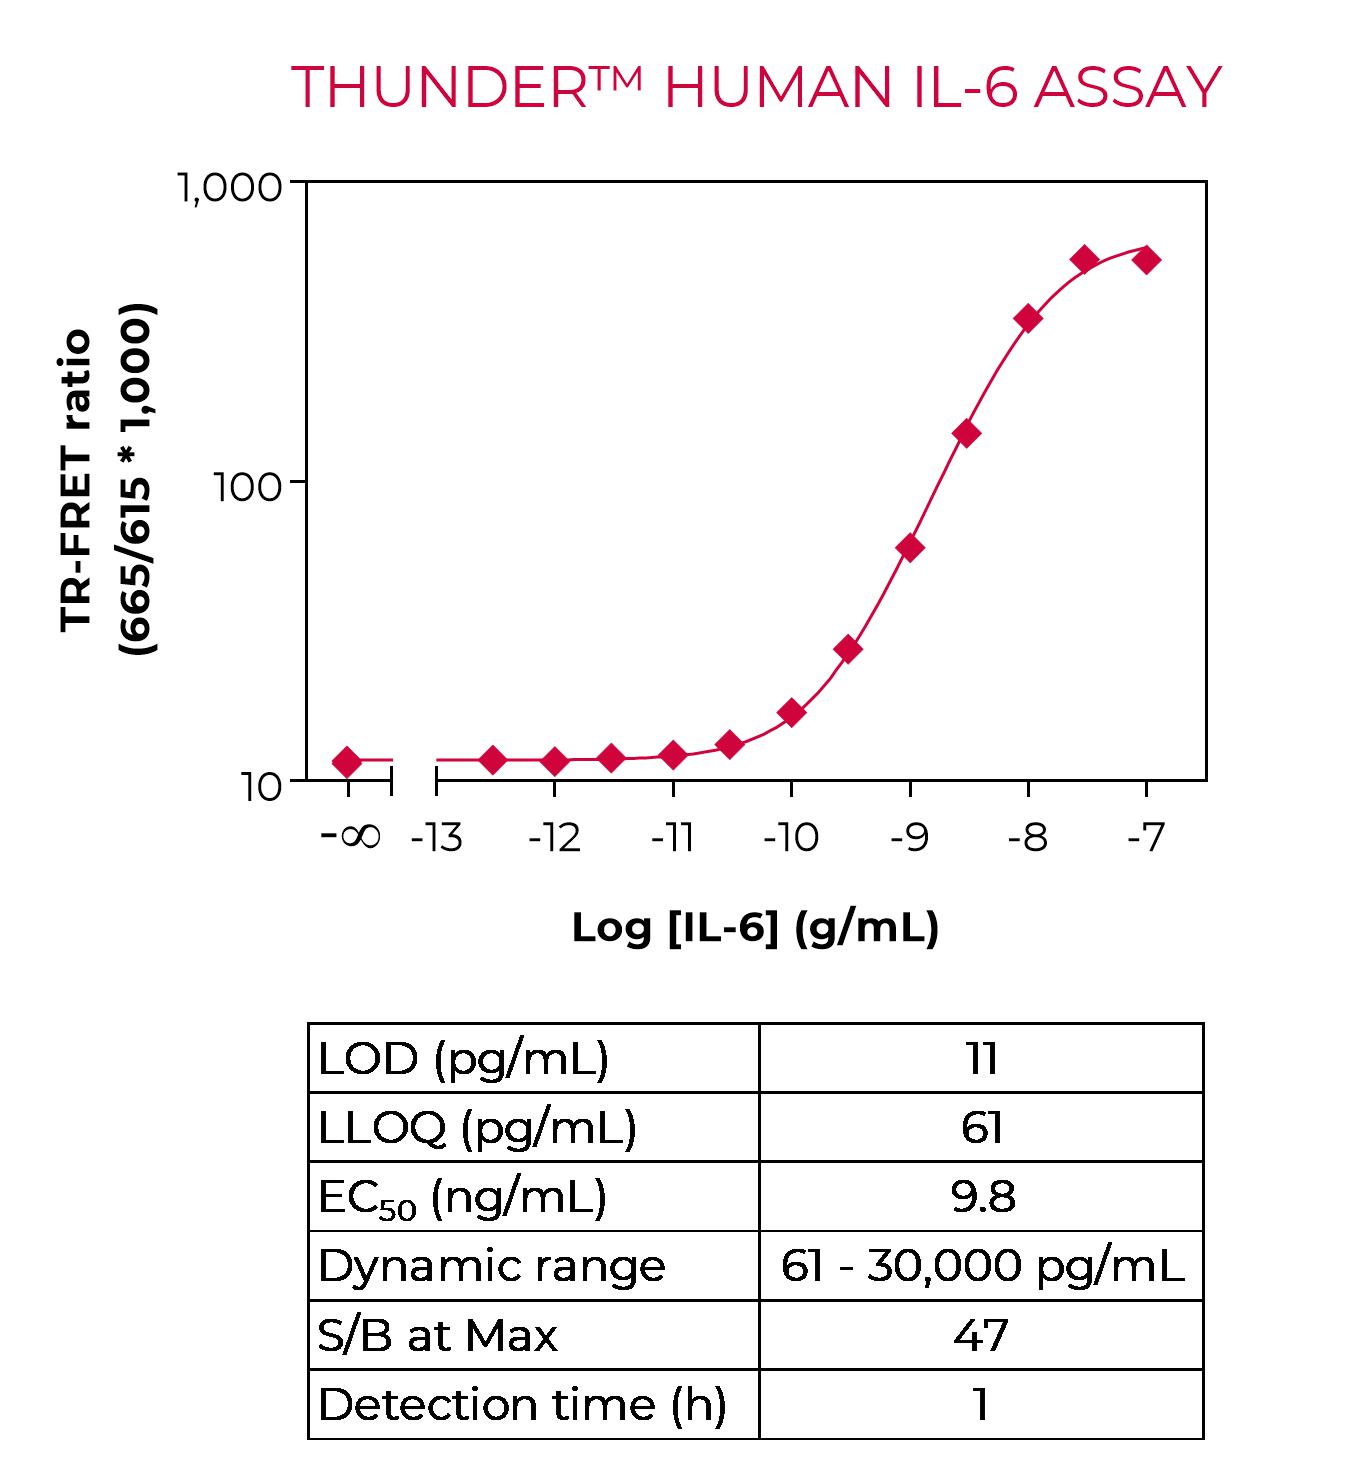 THUNDER Human IL-6 standard curve